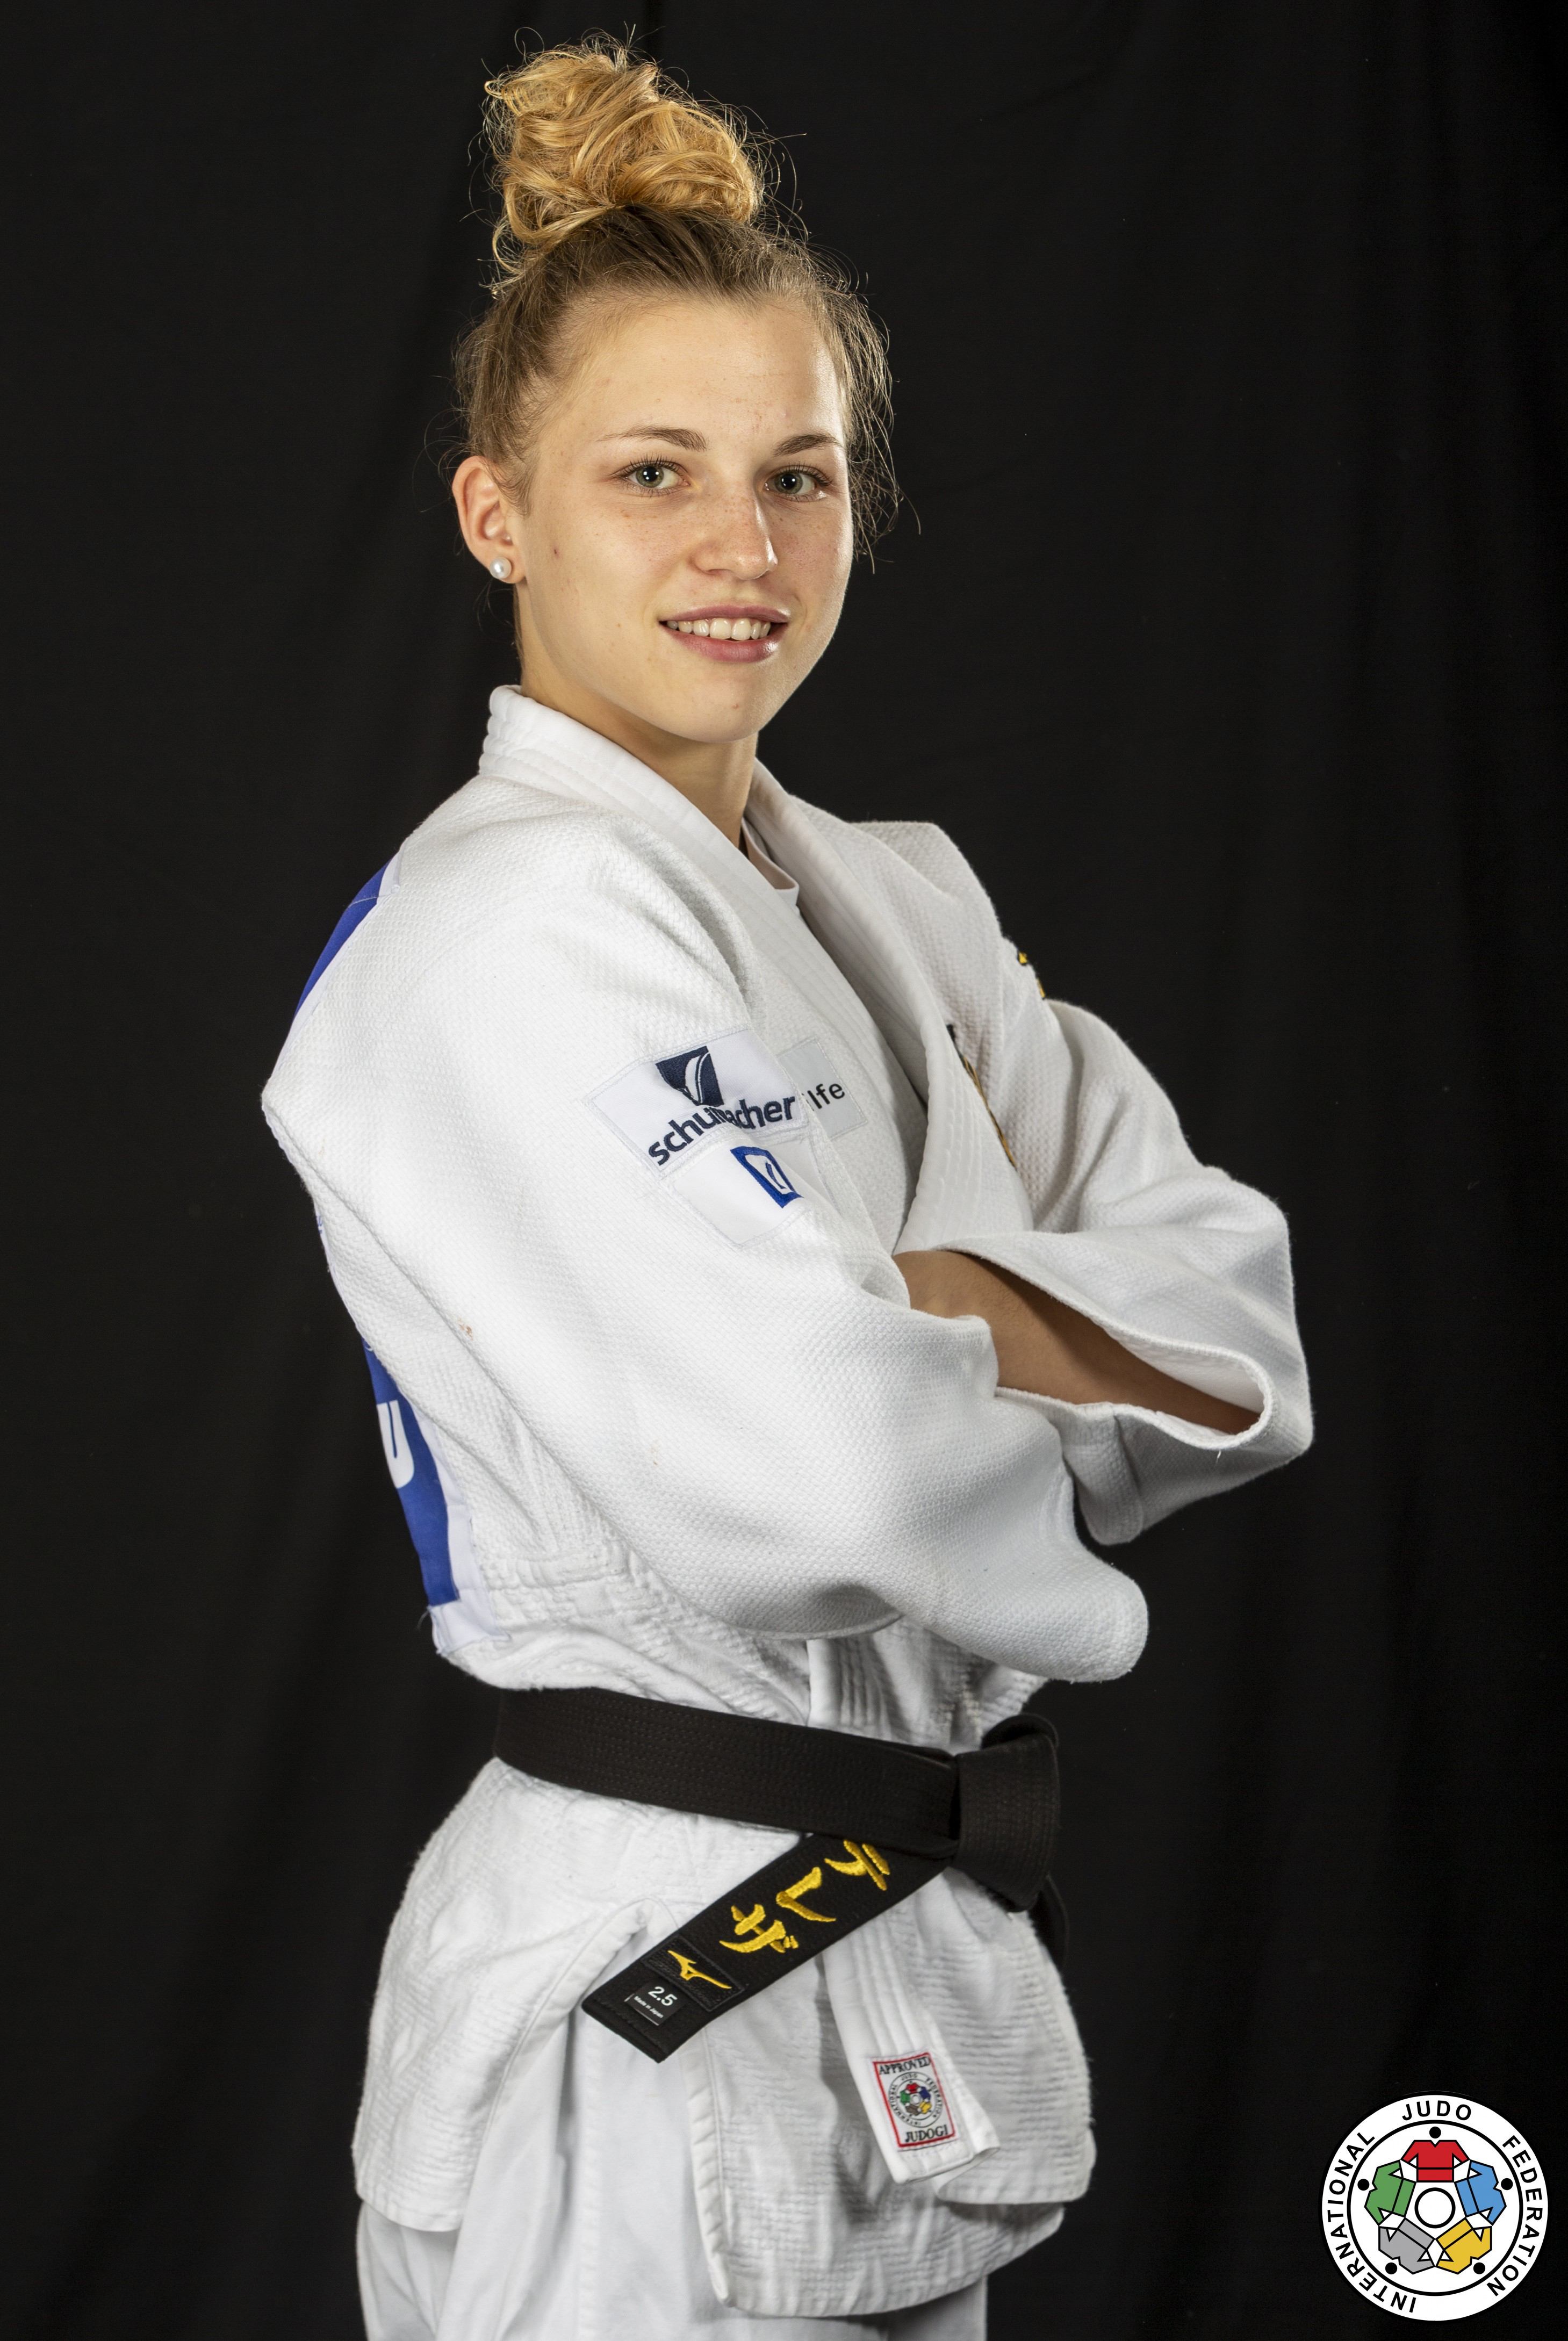 Judoka Theresa Stoll